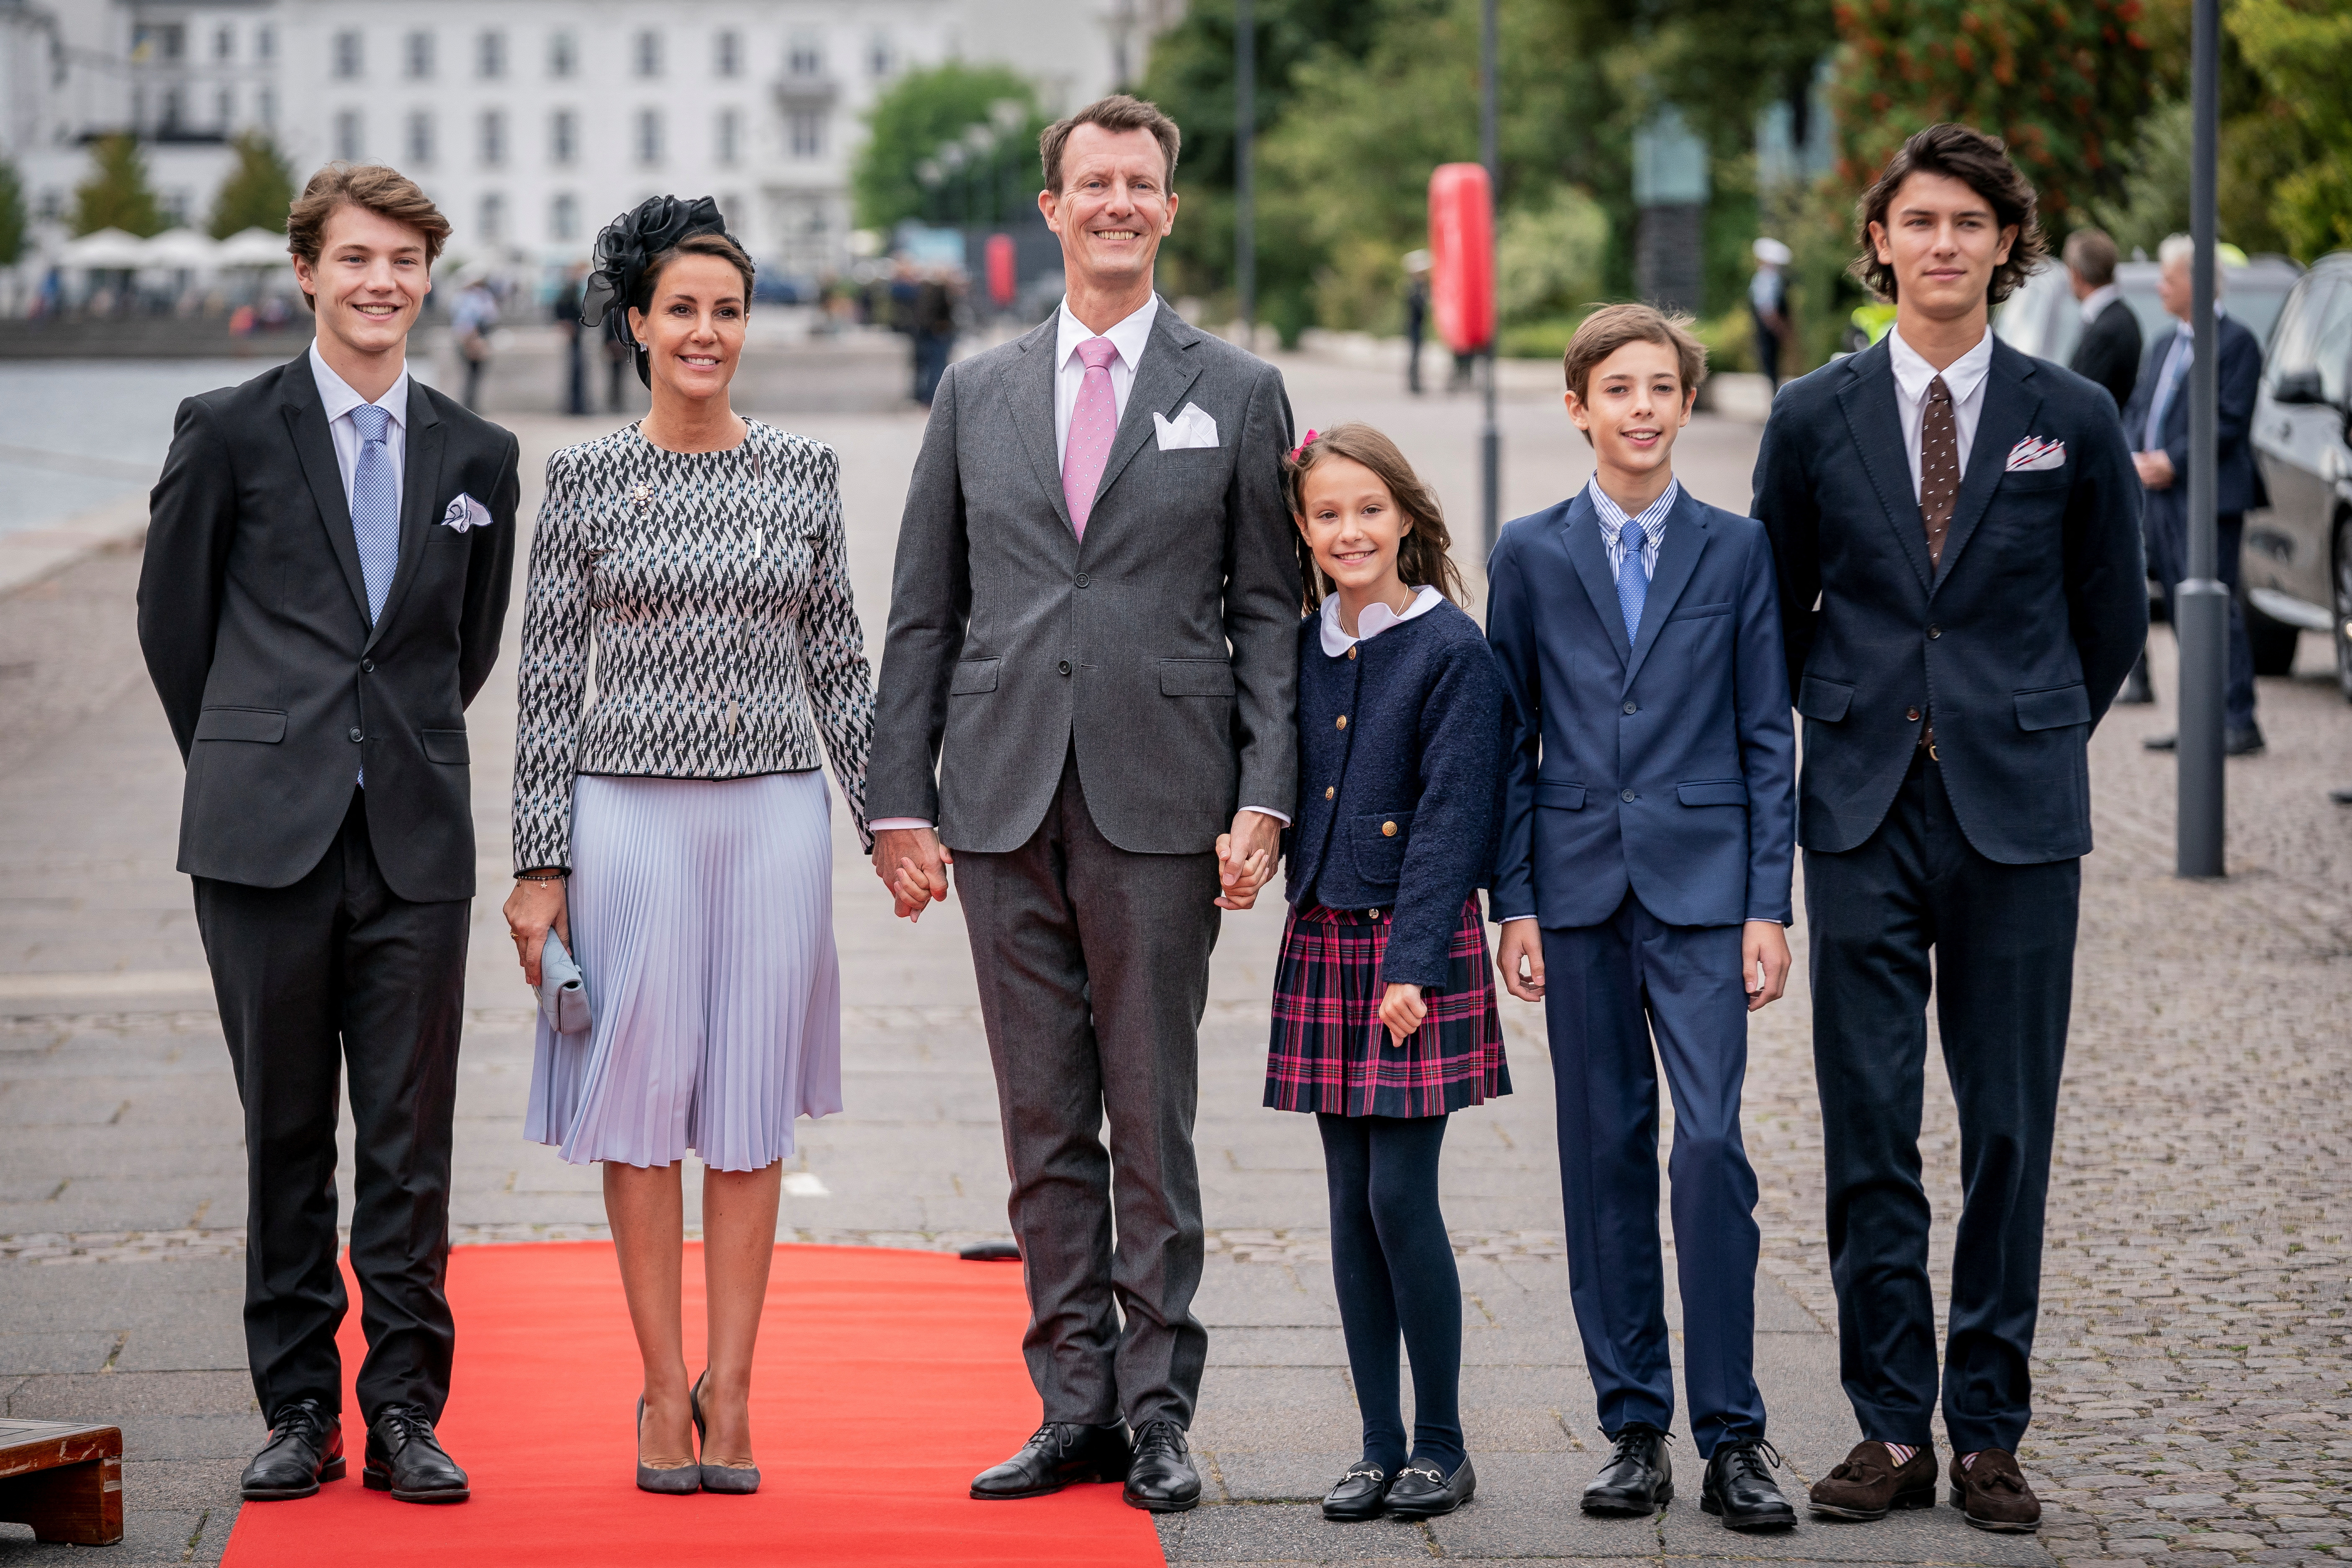 Joaquín de Dinamarca tiene cuatro hijos: Nicolás, de 23 años, y Félix, tres menor, fruto de su matrimonio con la condesa Alejandra; y Enrique, de 13, y Athena, de 10, de su matrimonio con la princesa María (REUTERS)